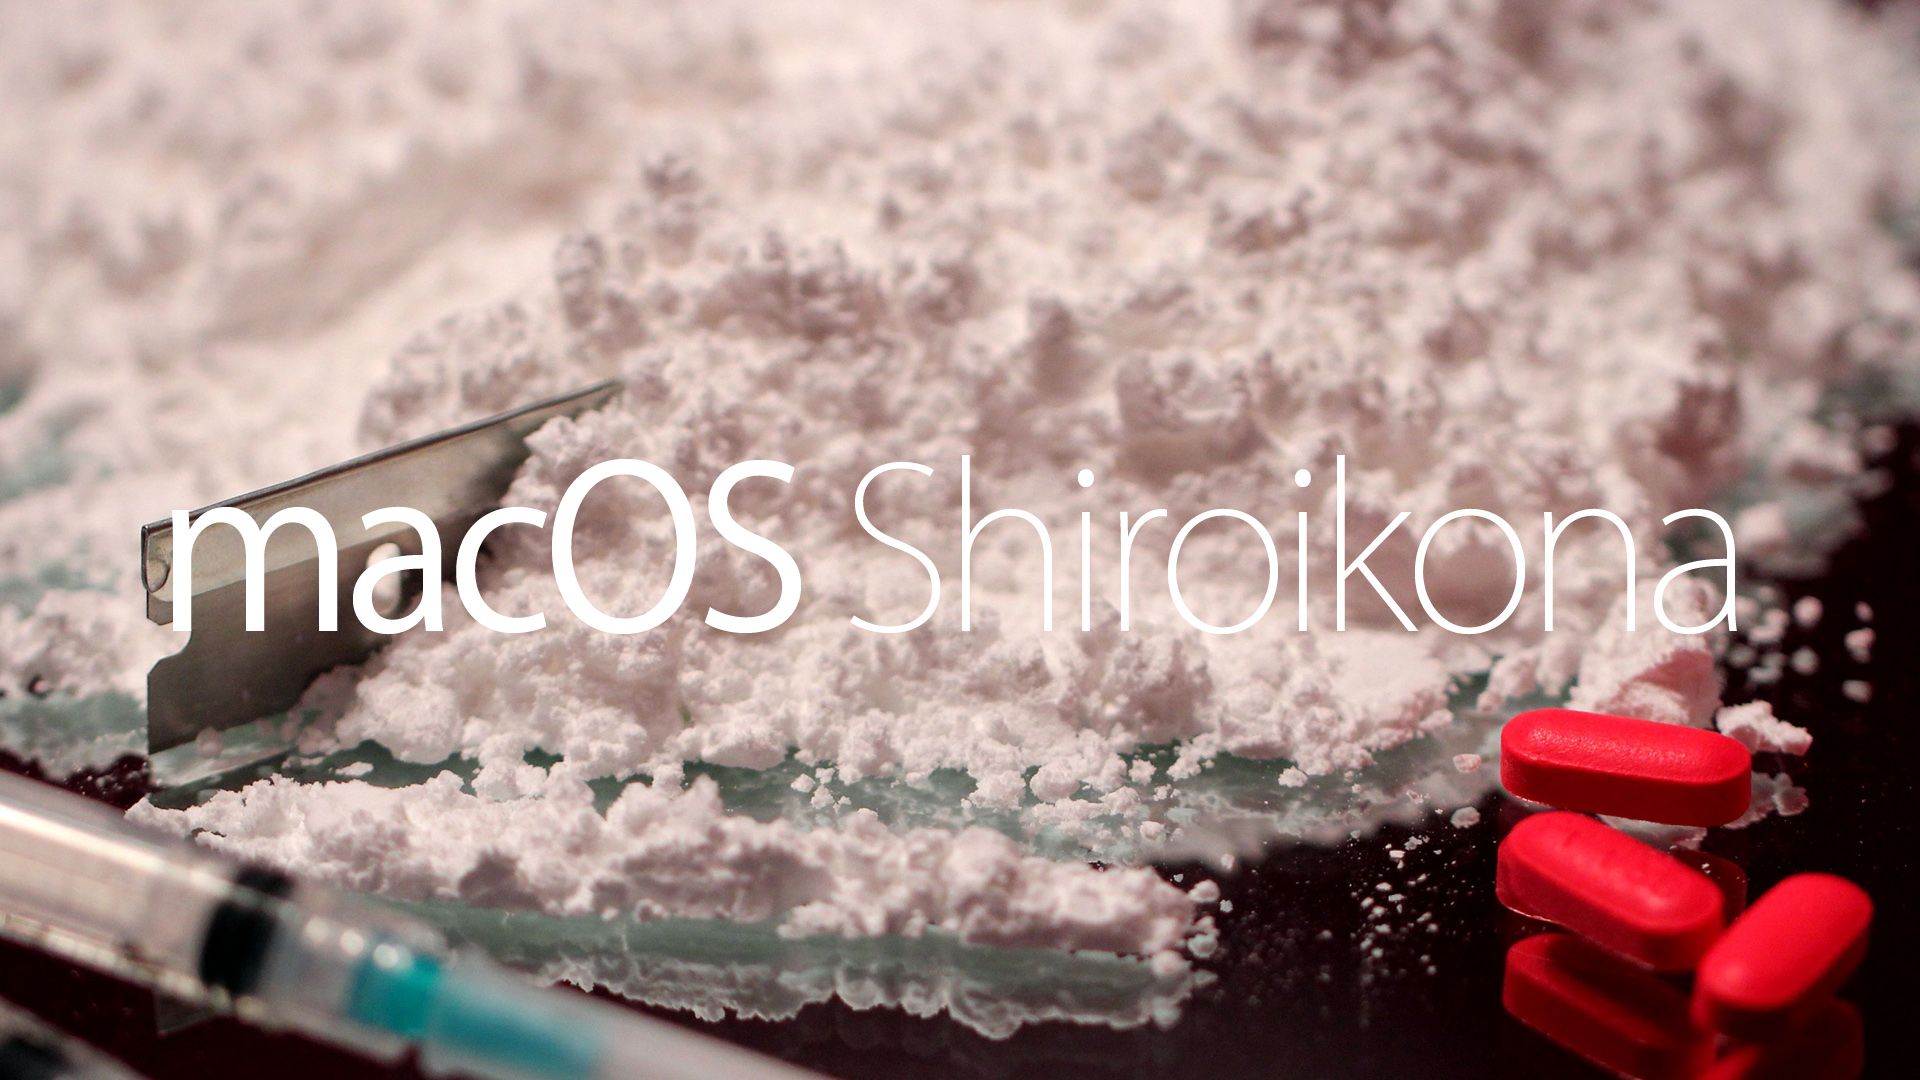 Mac OS Shiroikona